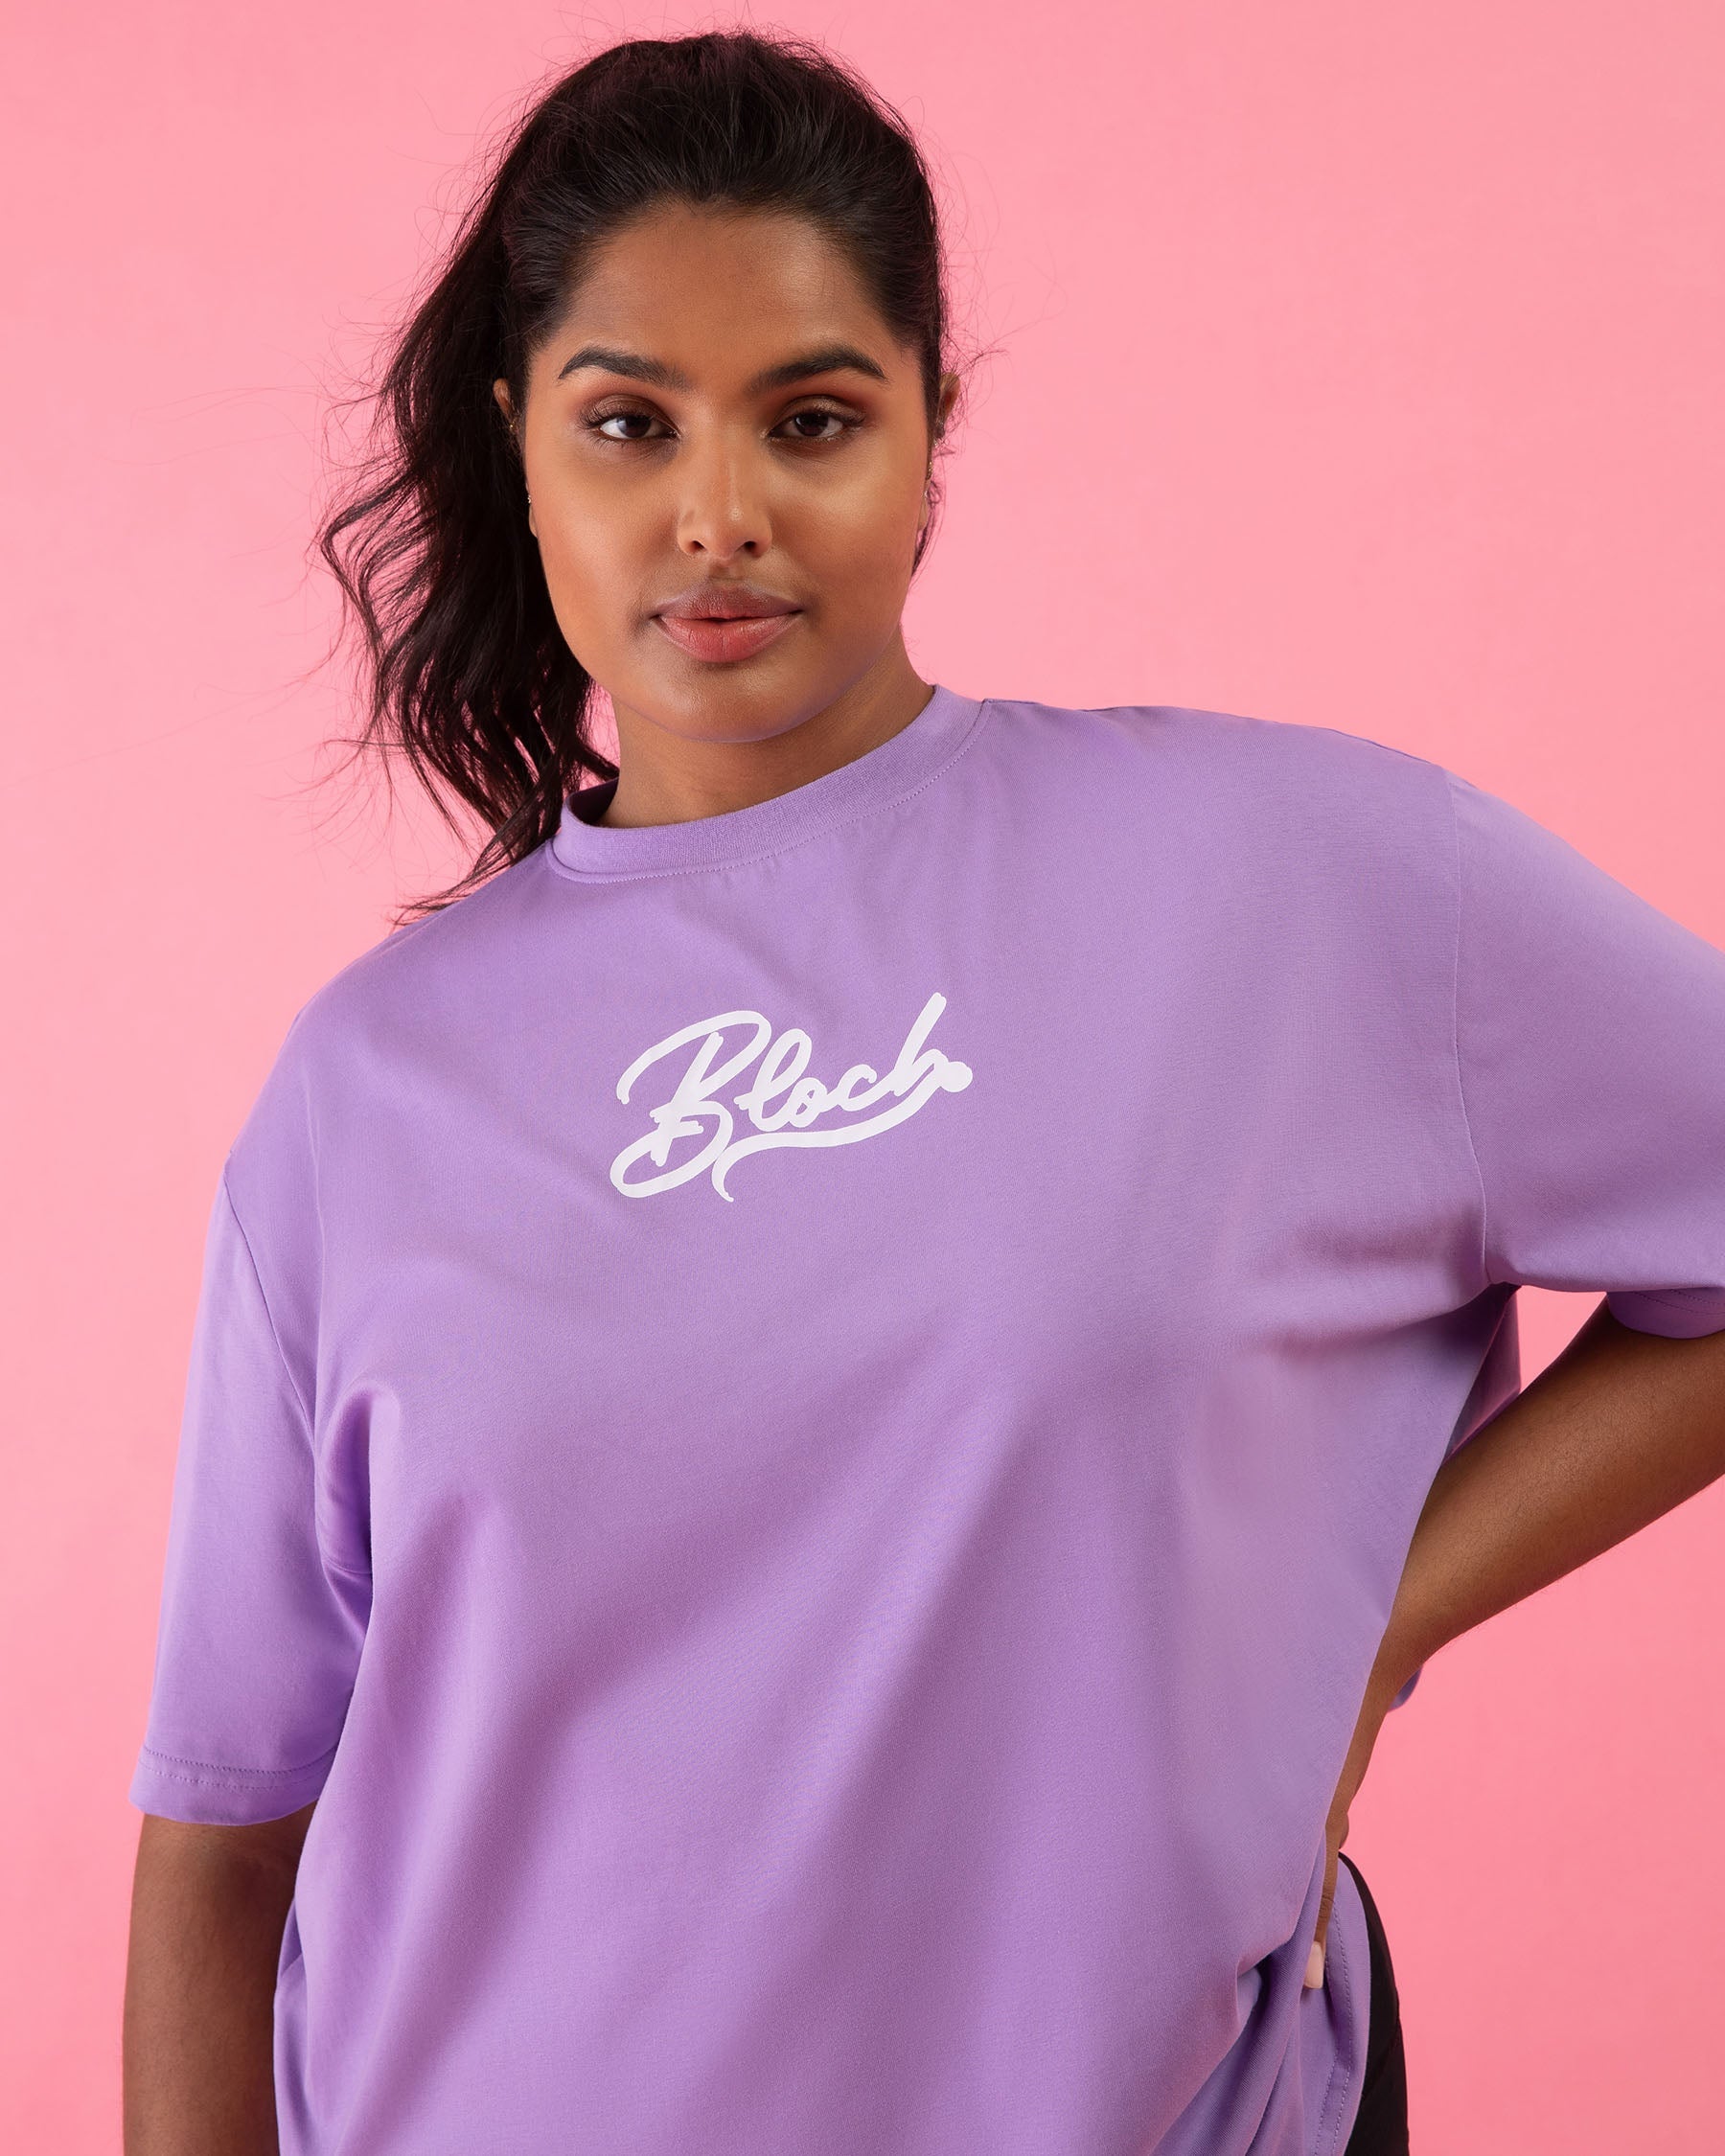 Bloch Play Tee, Dance – BLOCH Oversized Purple US